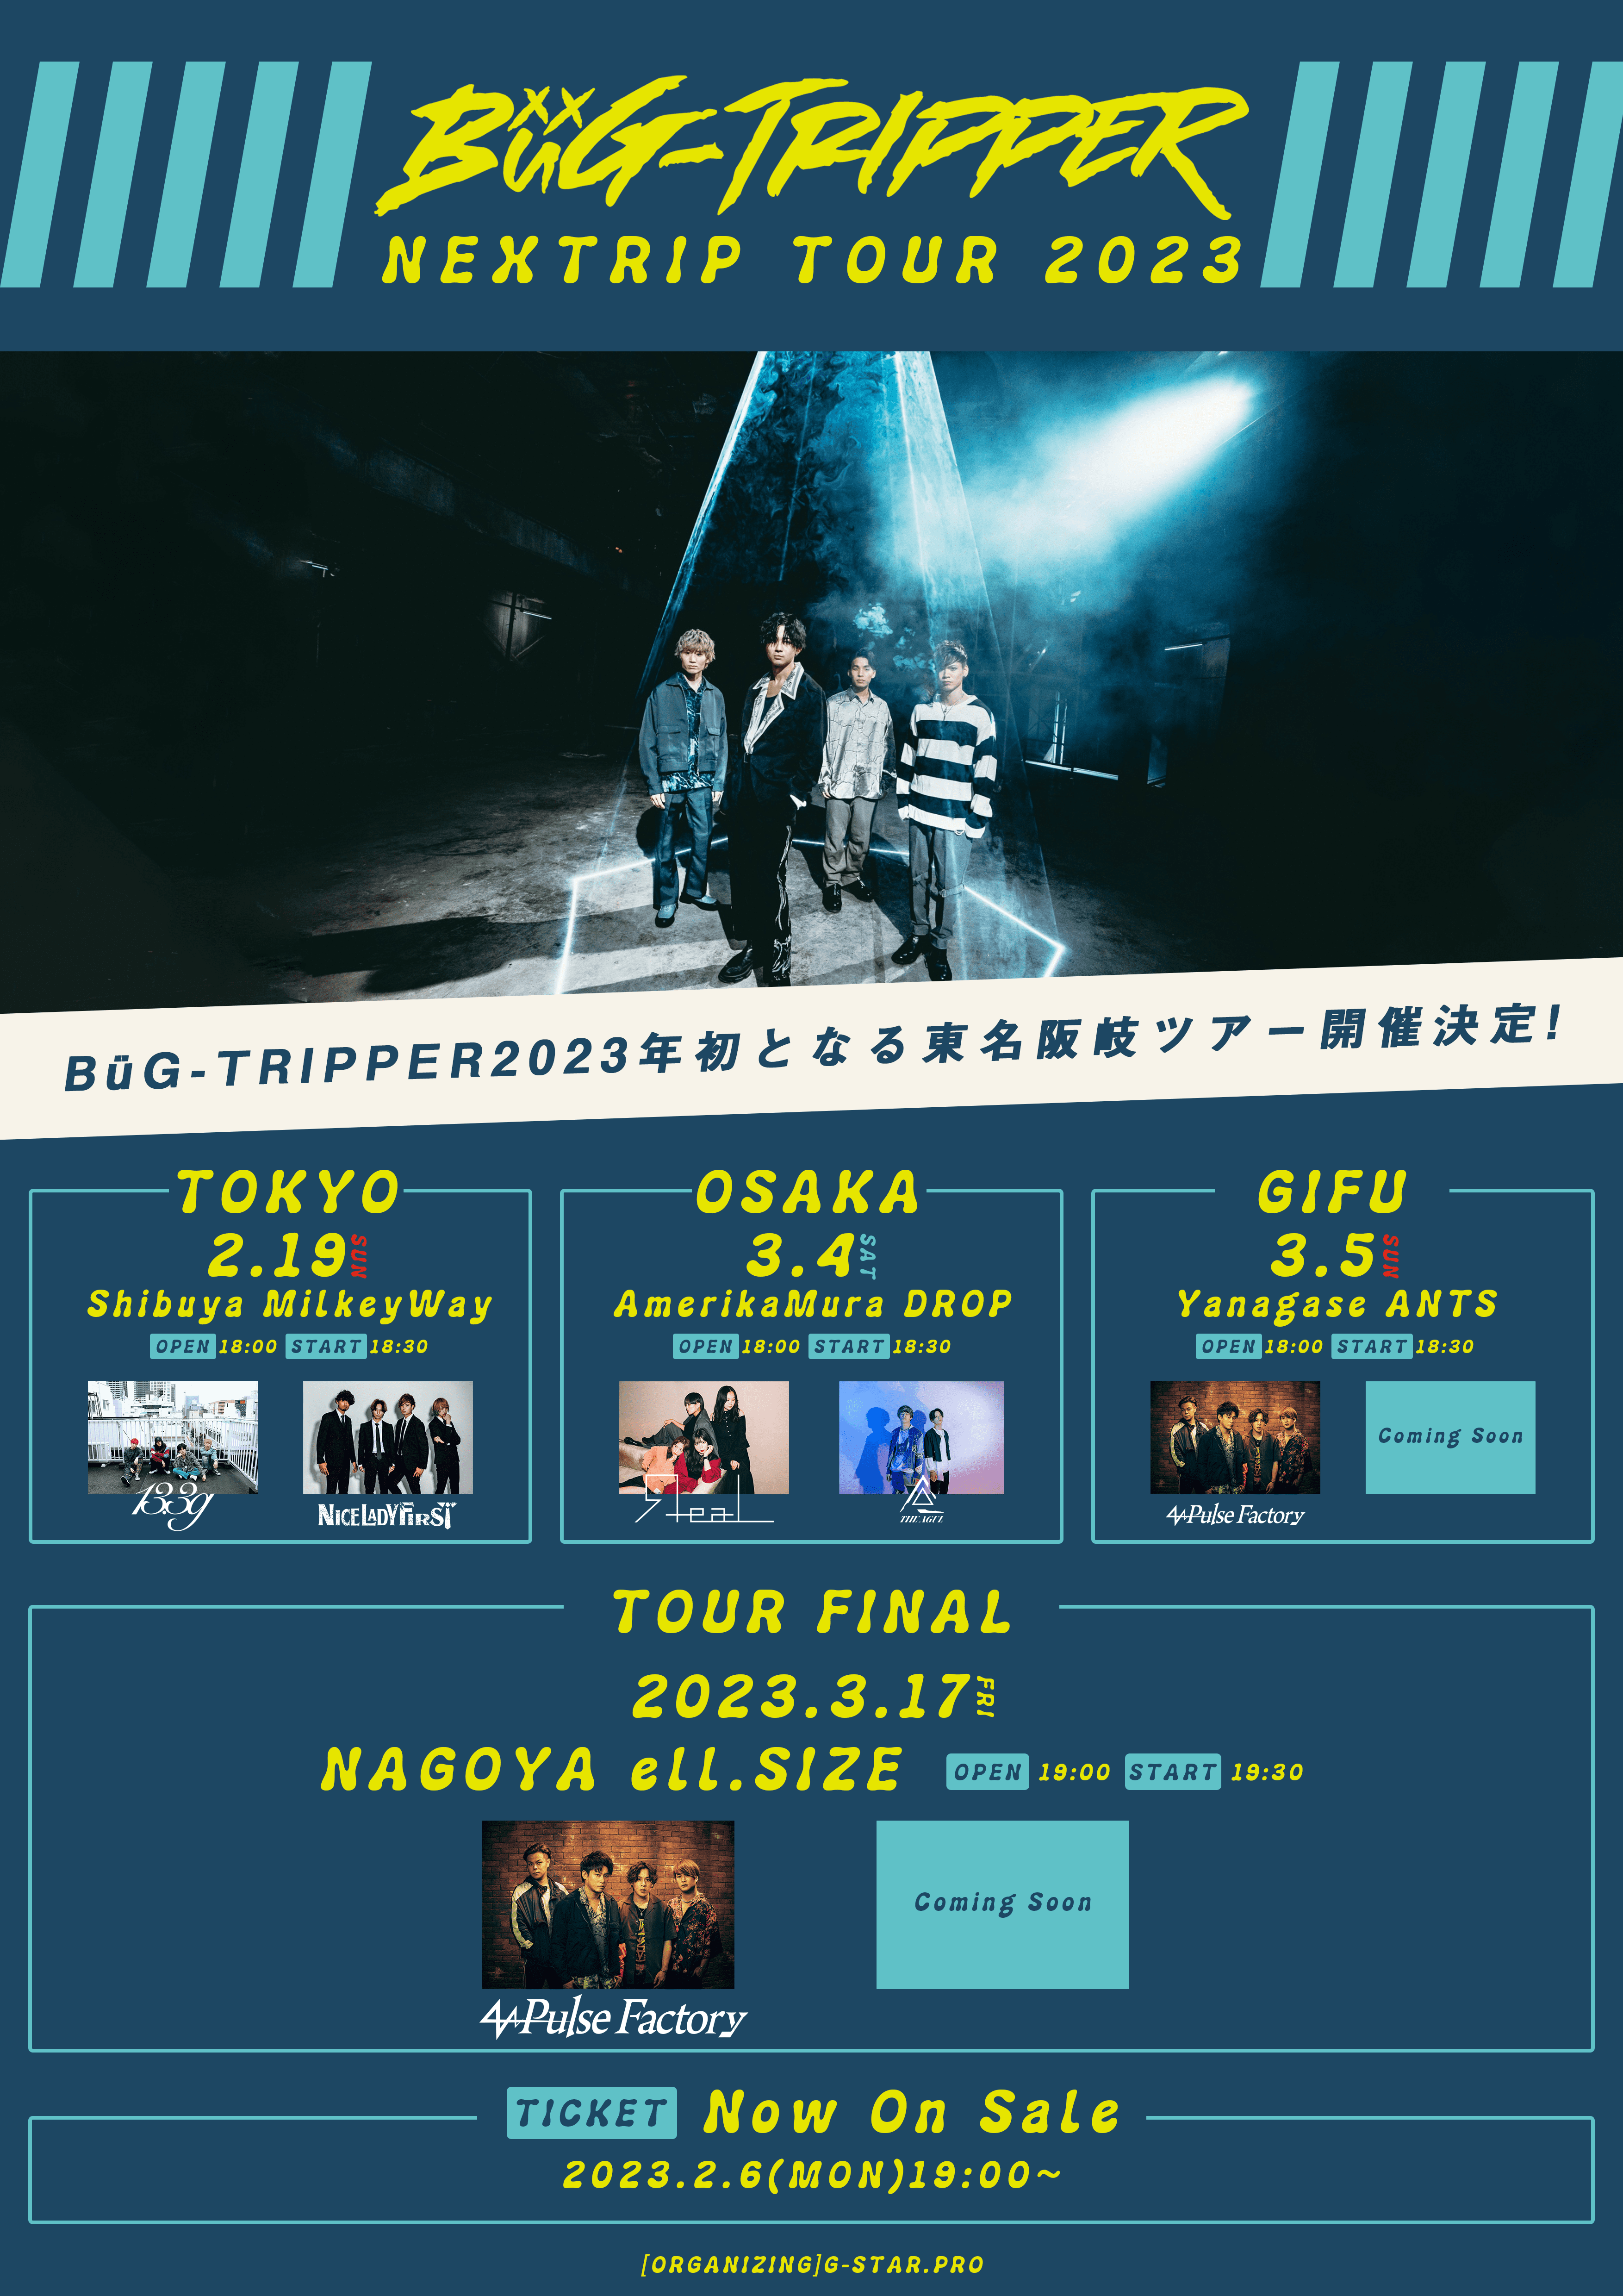 【一般発売】BüG-TRIPPER NEXTRIP TOUR 2023 [東京公演]